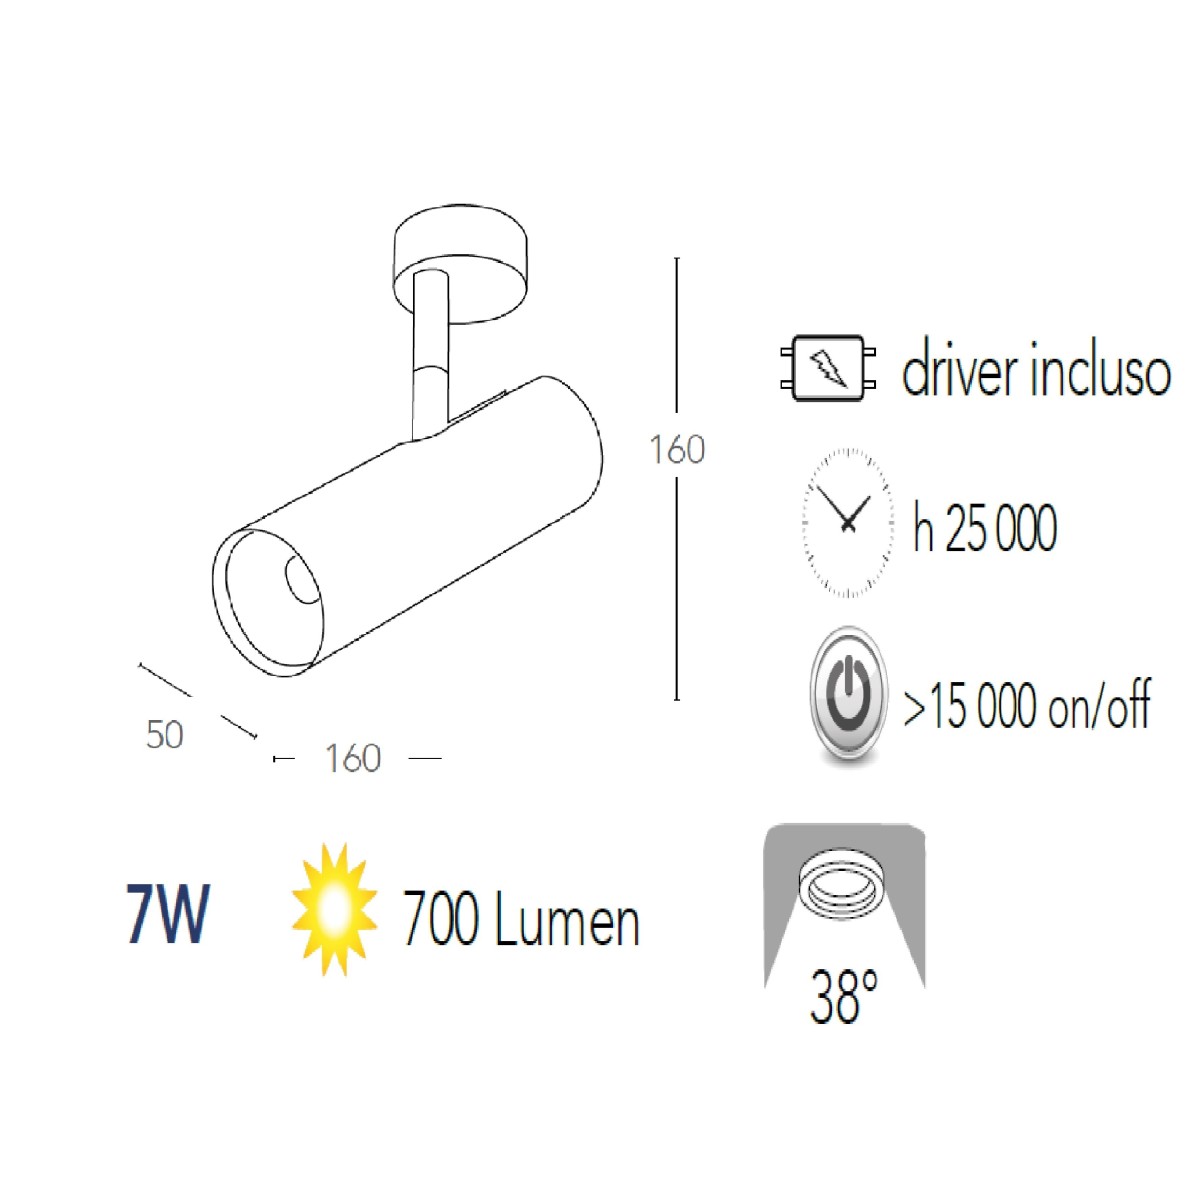 Verstellbarer LED-Deckenstrahler aus weißem Aluminium mit integrierter COB-LED A+, warmes Licht K 7 W